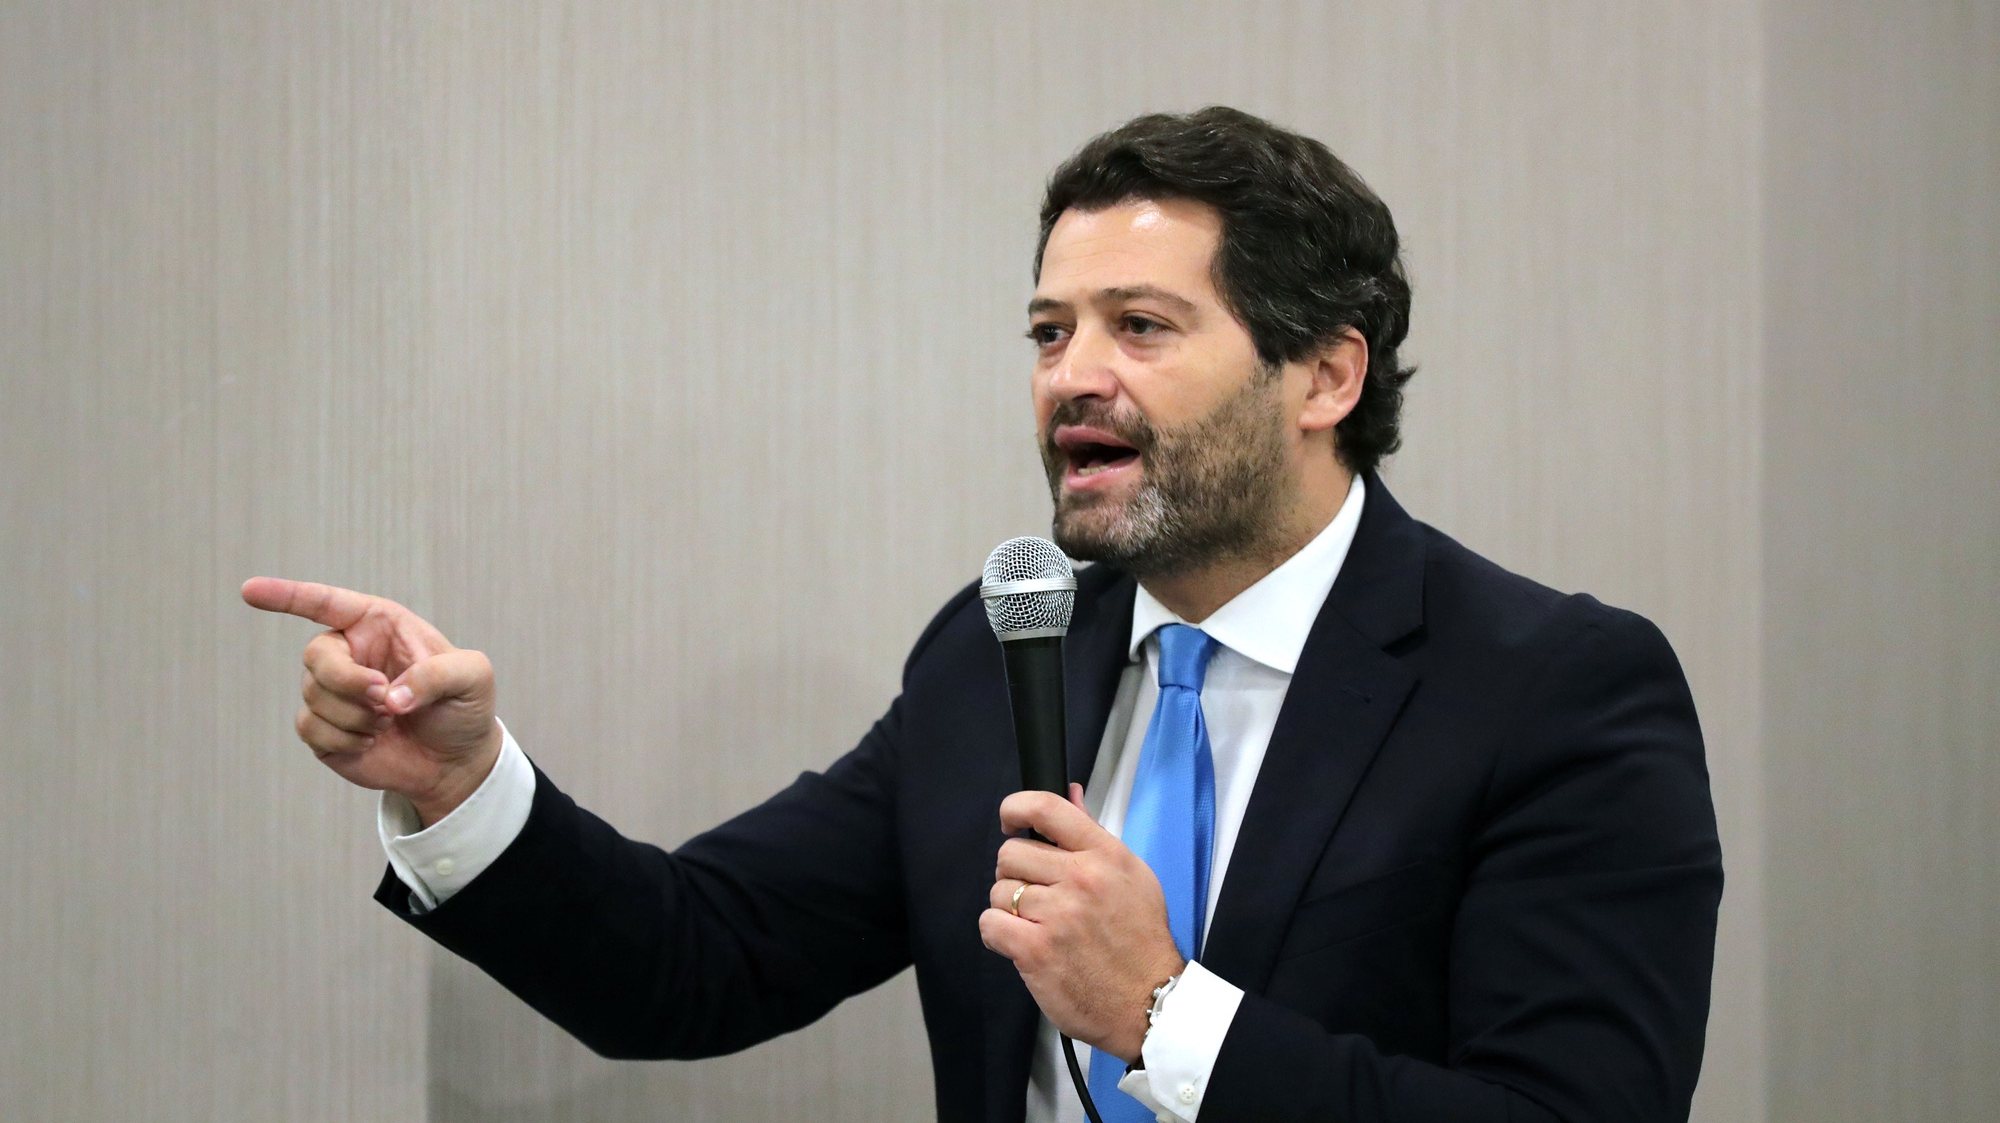 André Ventura, recandidato à presidência do partido Chega, discursa durante um encontro com militantes num hotel no Porto, 19 de fevereiro de 2021. ESTELA SILVA/LUSA